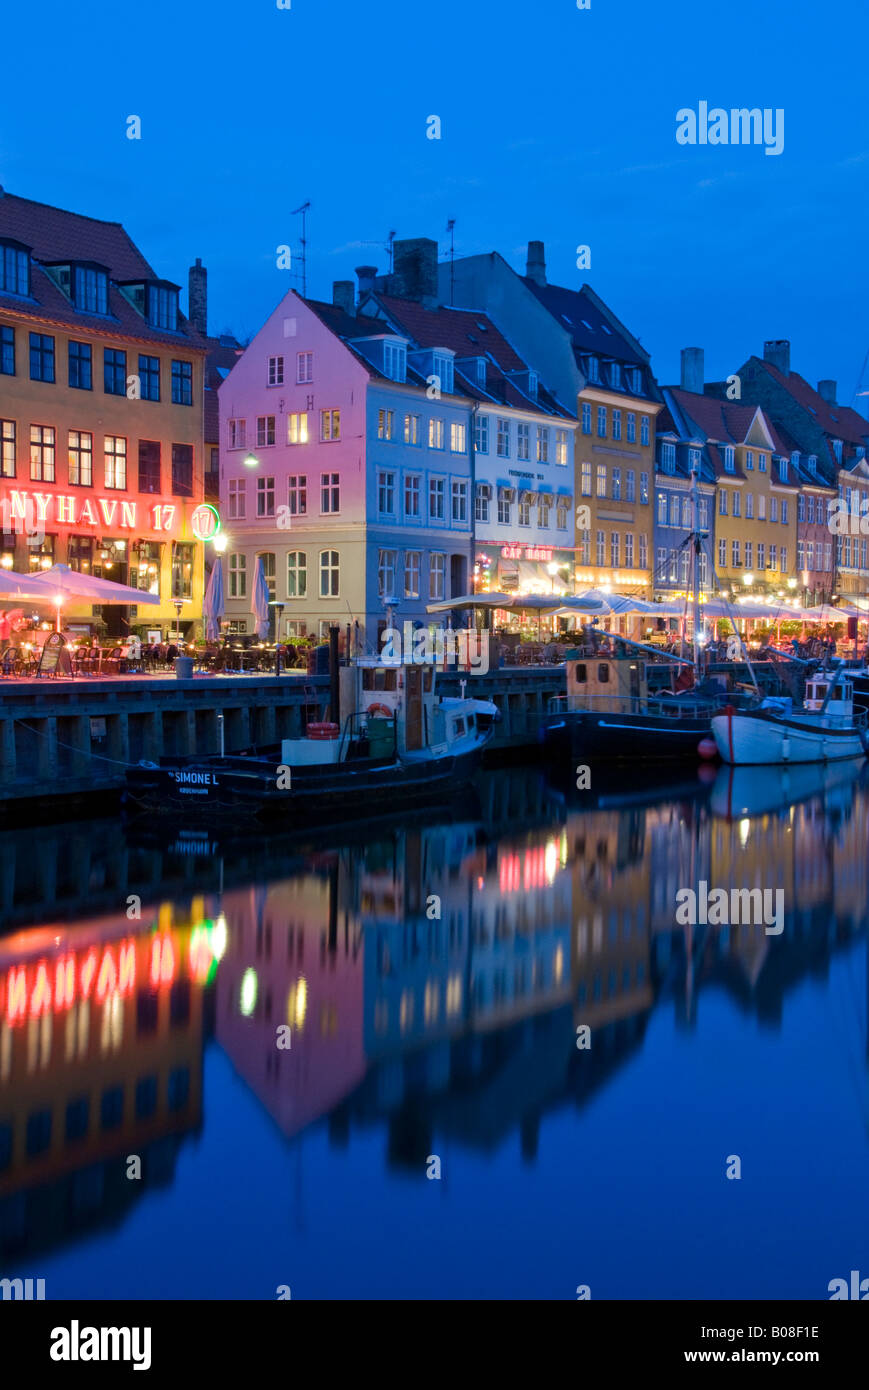 Historic Old Boats Moored Alongside Nyhavn Quayside at Night, Nyhavn, Copenhagen, Denmark, Europe Stock Photo